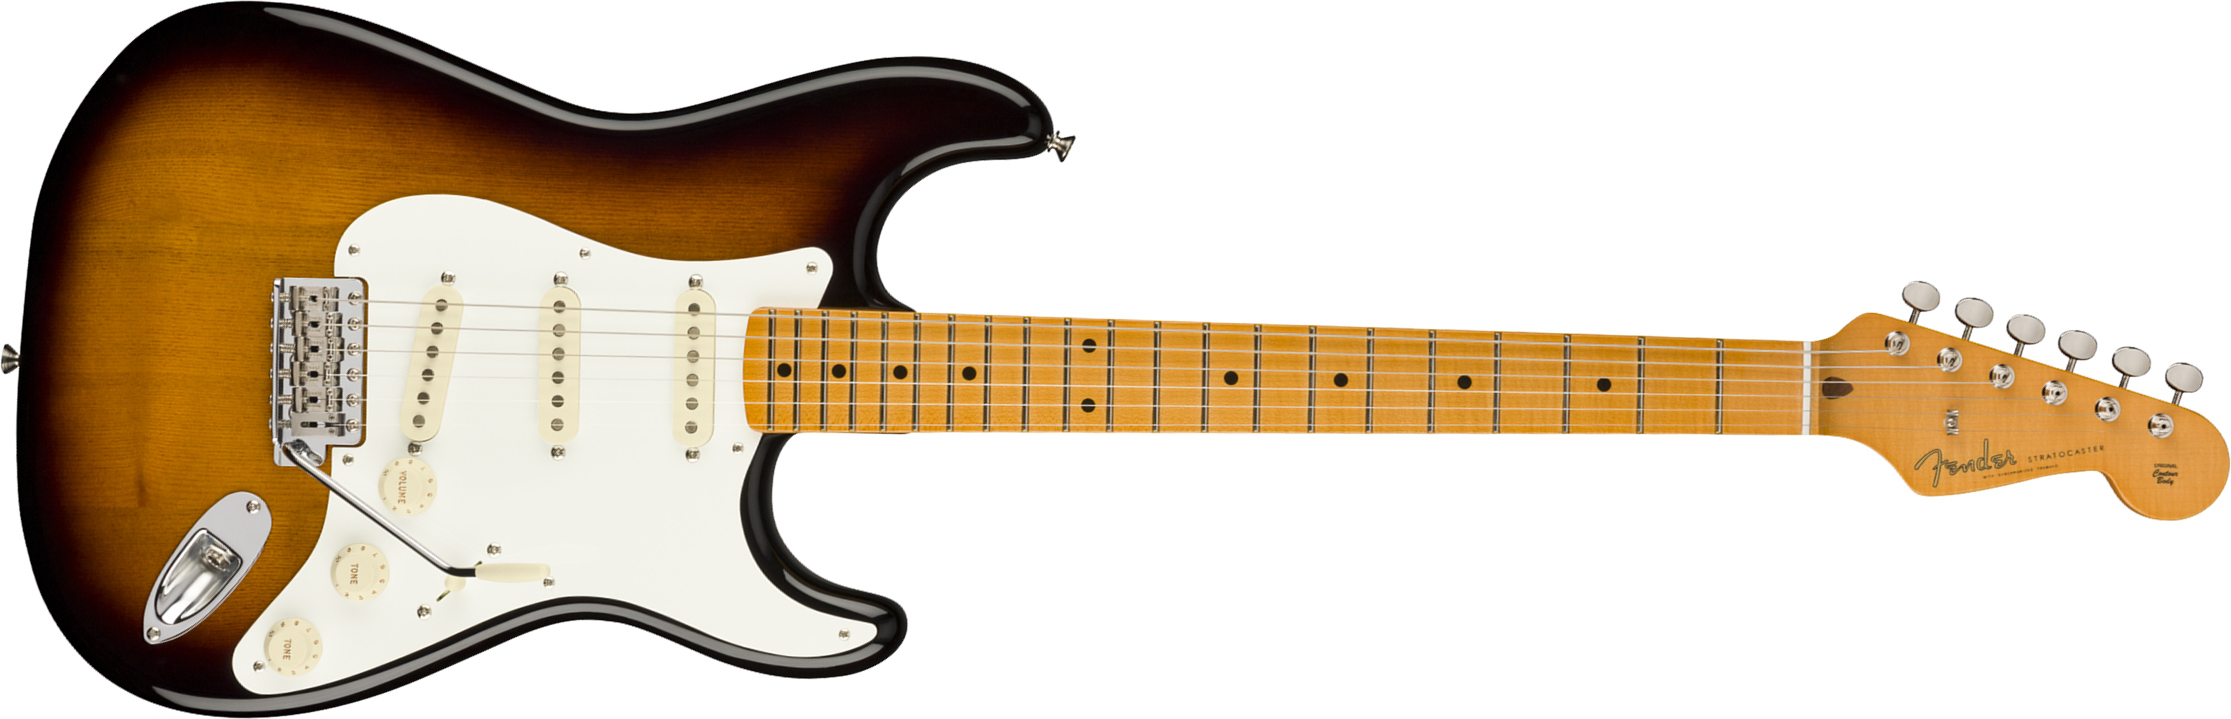 Fender Eric Johnson Strat 1954 Virginia Stories Collection Usa Signature Mn - 2-color Sunburst - Guitare Électrique Forme Str - Main picture